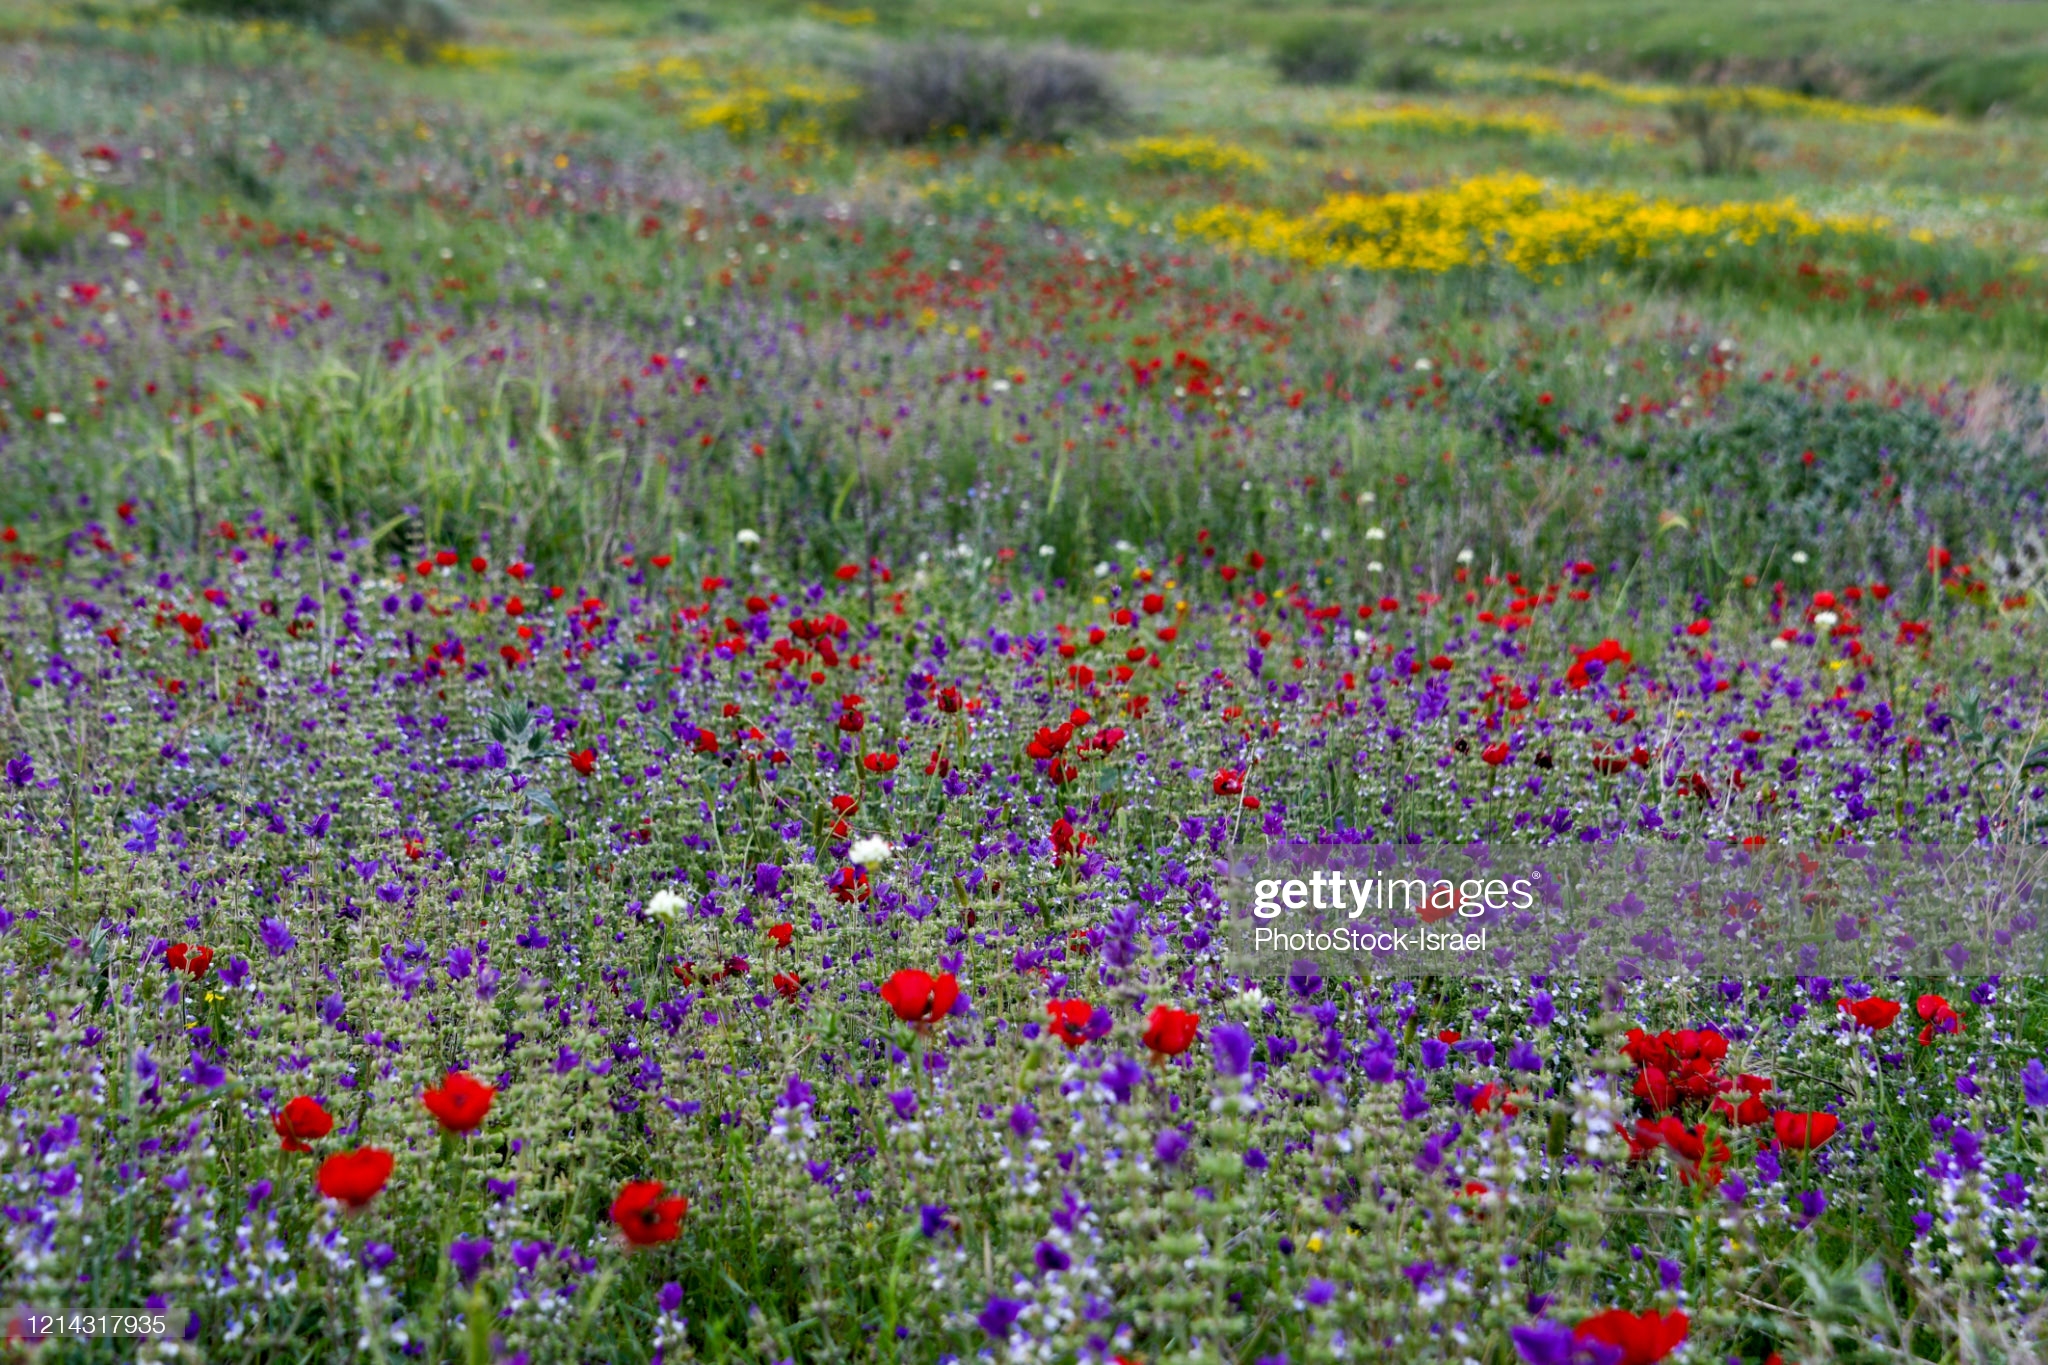 spring-bloom-jordan-valley-picture-id1214317935